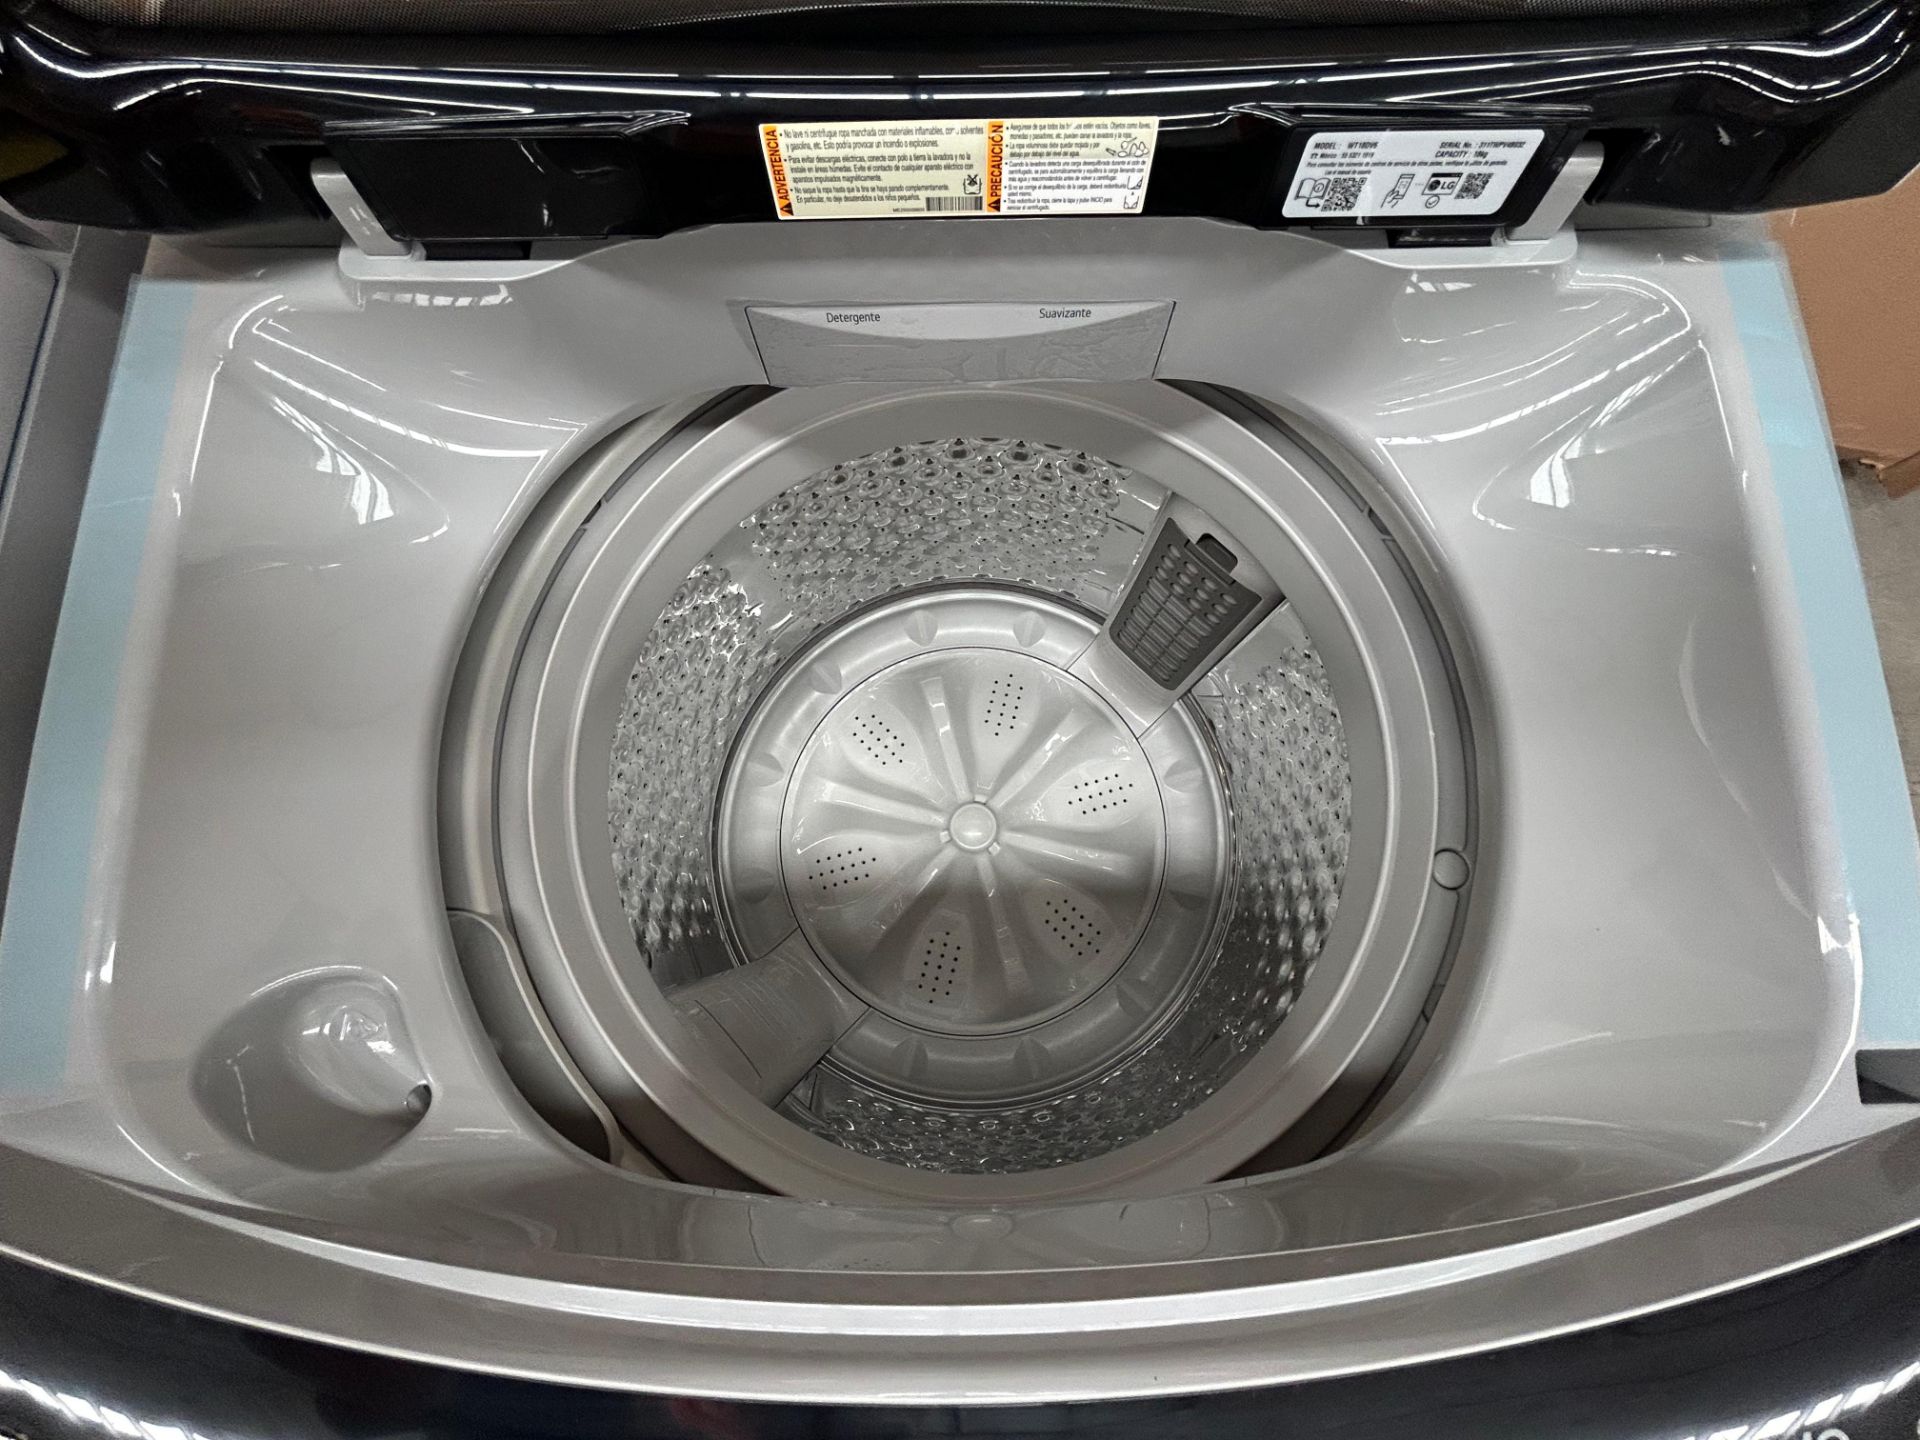 Lote de 2 lavadoras contiene: 1 Lavadora de 18 KG Marca LG, Modelo WT18DV6, Serie 4B032, Color GRIS - Image 4 of 6